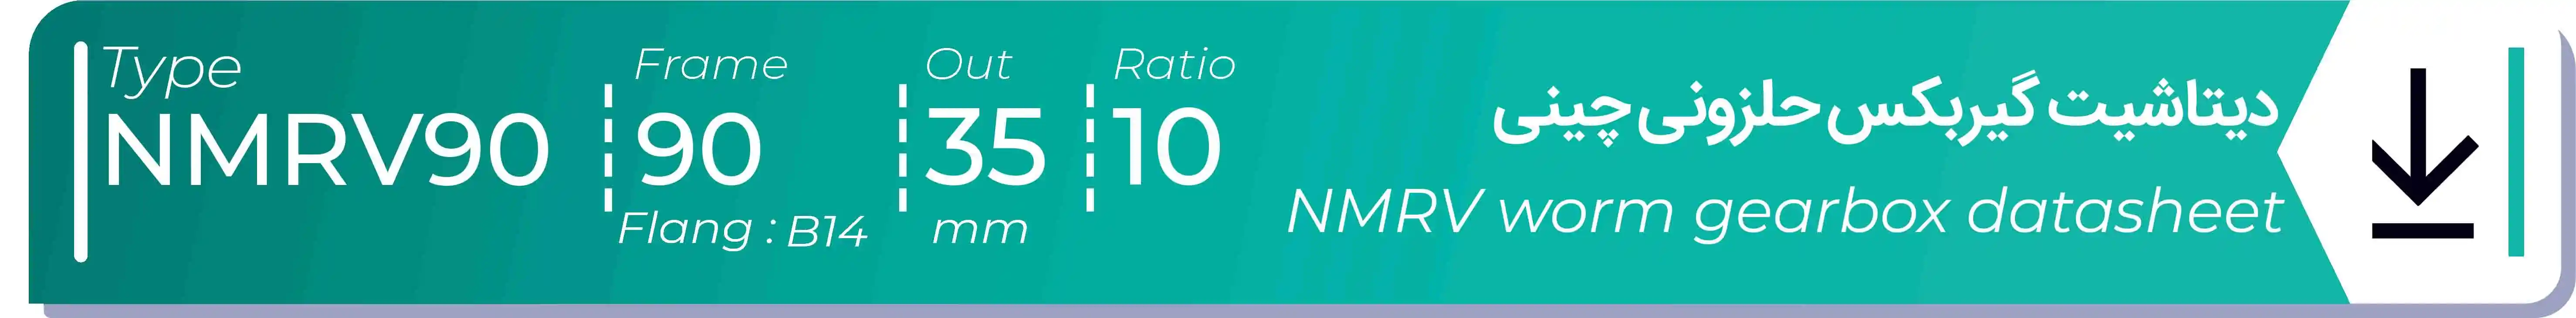  دیتاشیت و مشخصات فنی گیربکس حلزونی چینی   NMRV90  -  با خروجی 35- میلی متر و نسبت10 و فریم 90